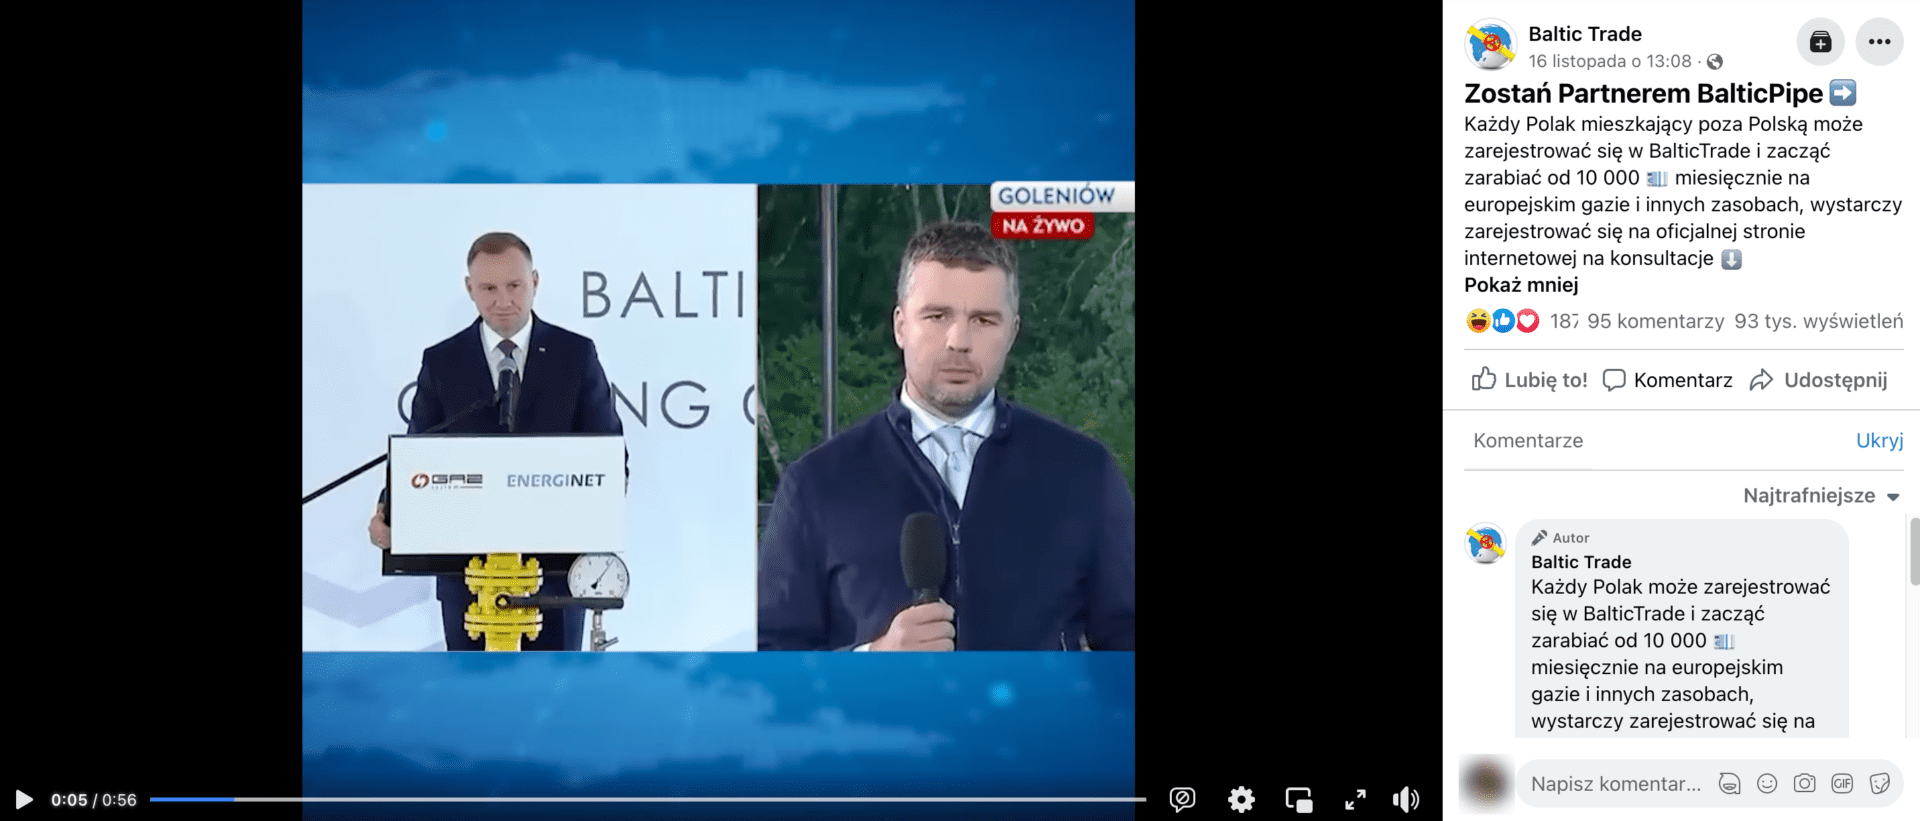 Zrzut ekranu posta na Facebooku, w którym udostępniono film z udziałem prezydenta na temat inwestycji w Baltic Pipe. Widoczny jest prezydent Andrzej Duda oraz dziennikarz z mikrofonem w ręku.